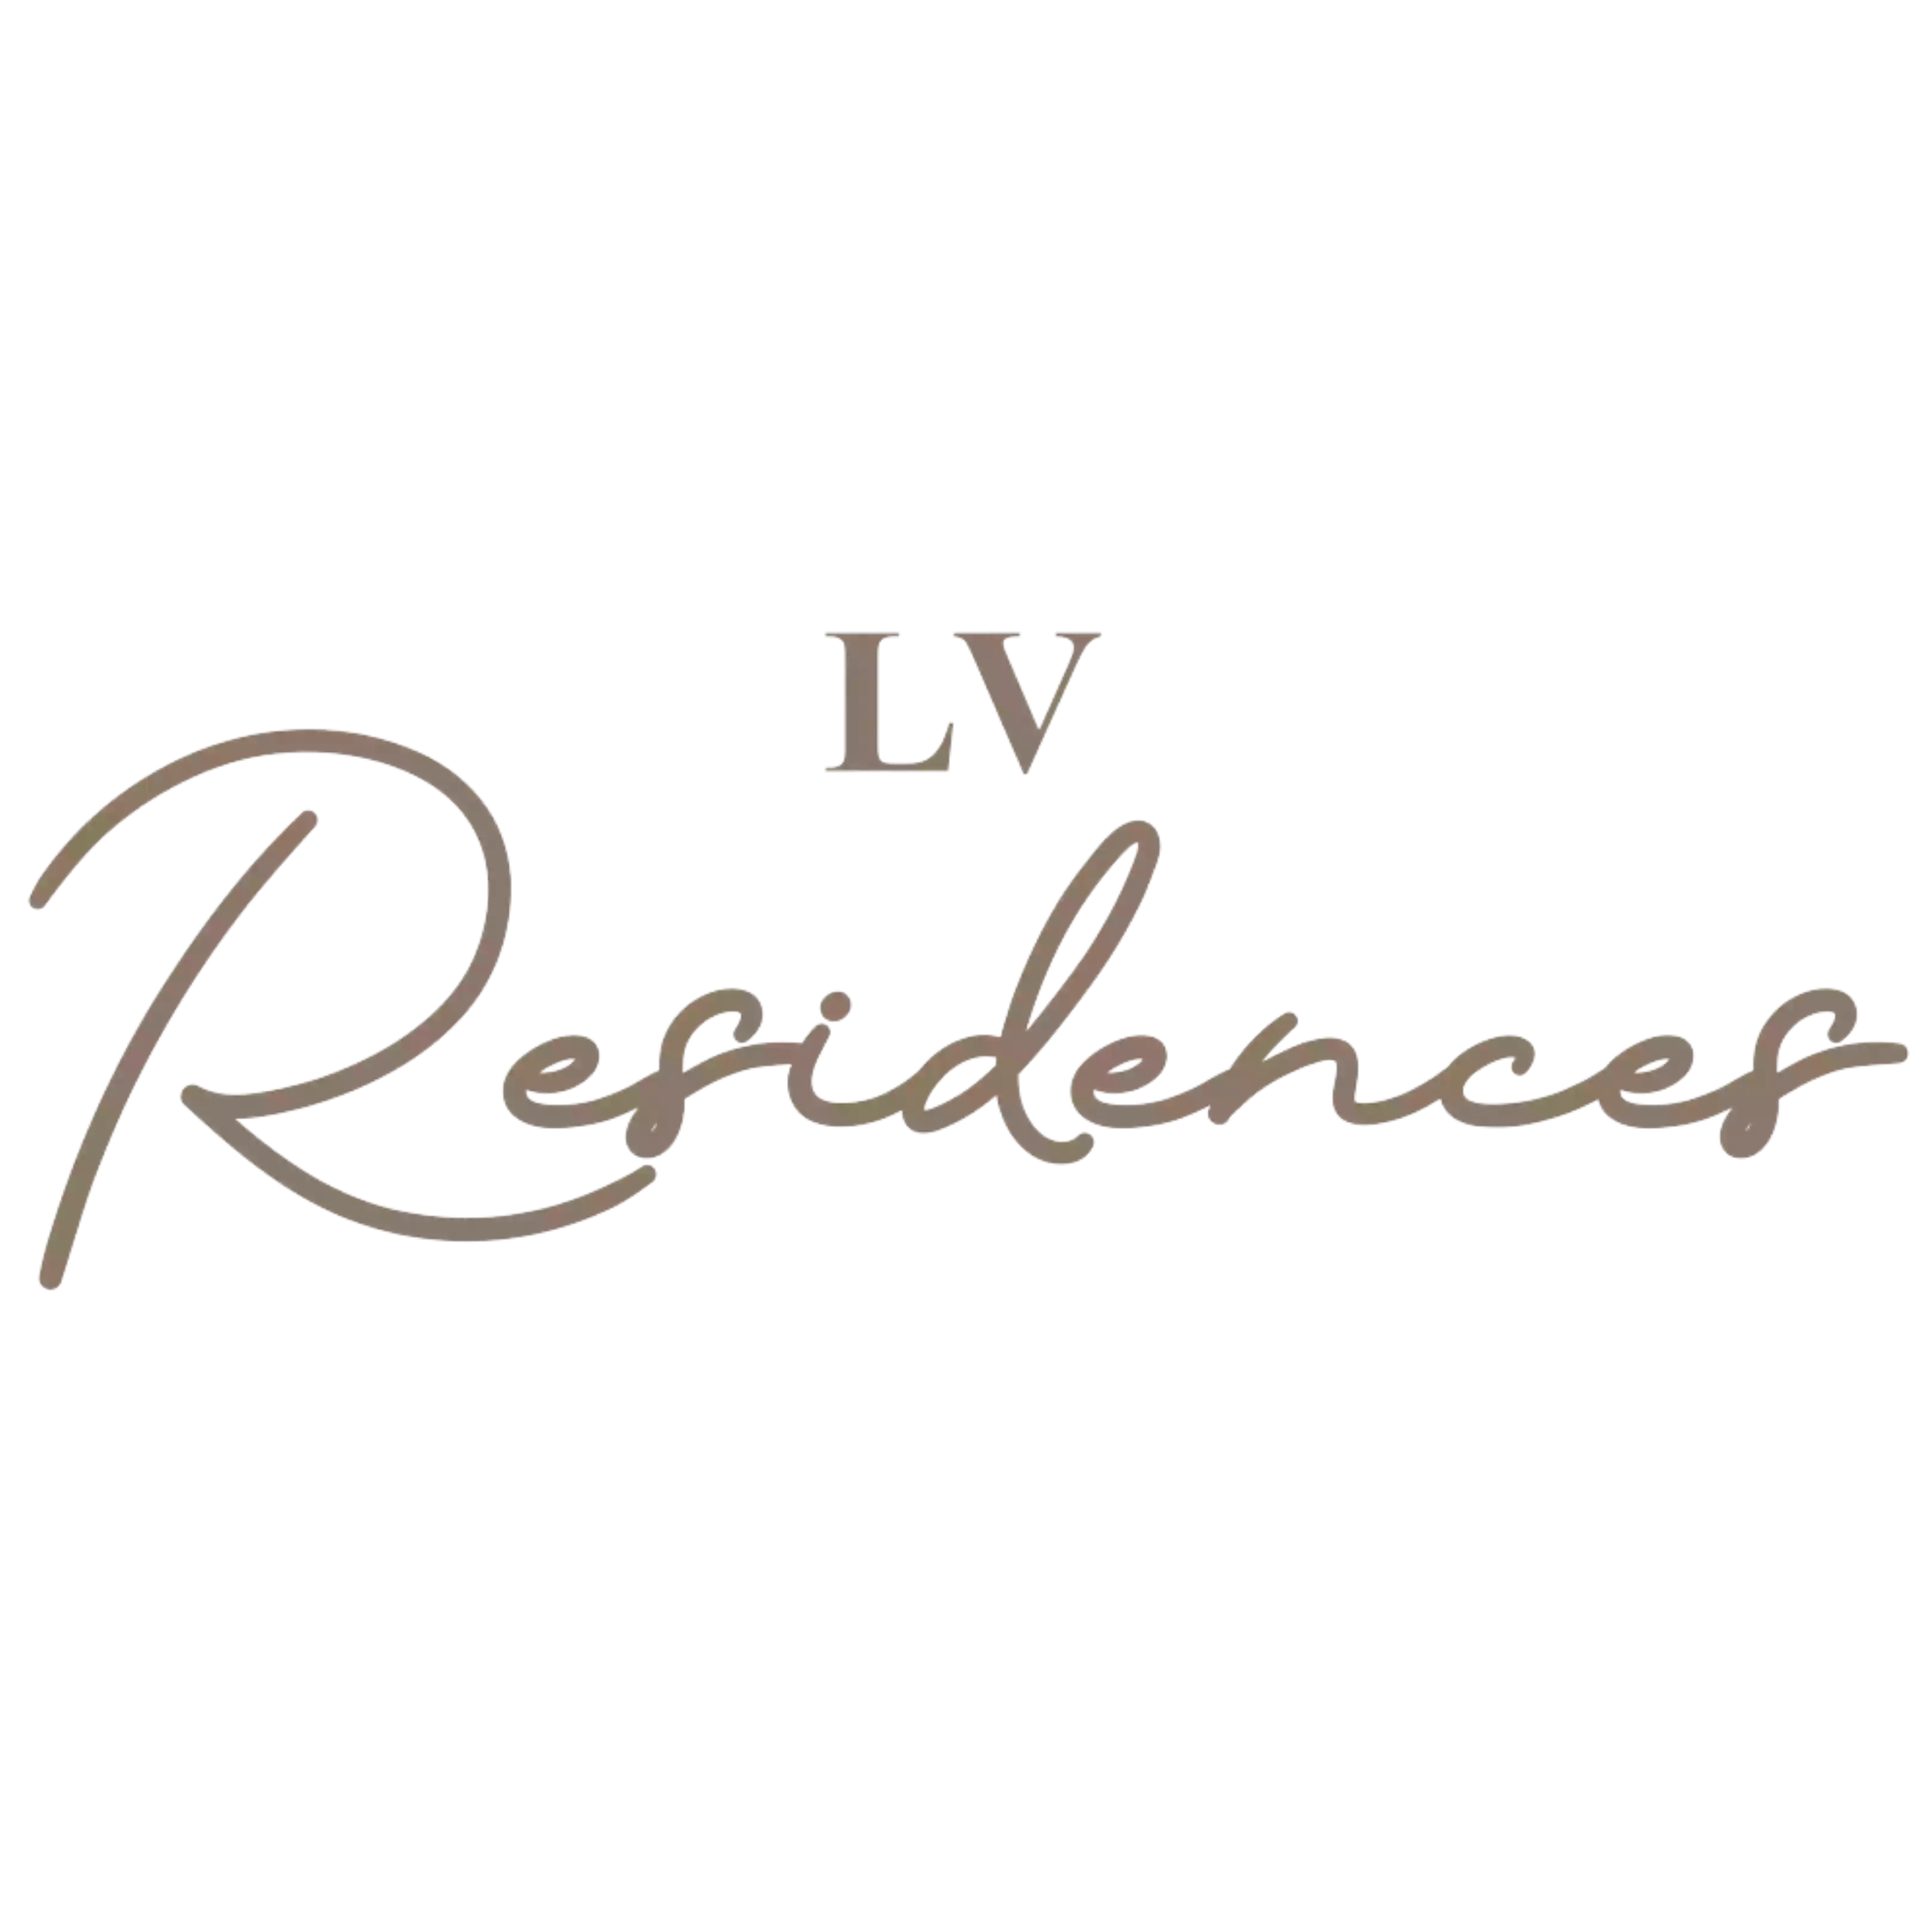 LV Residences Garonne